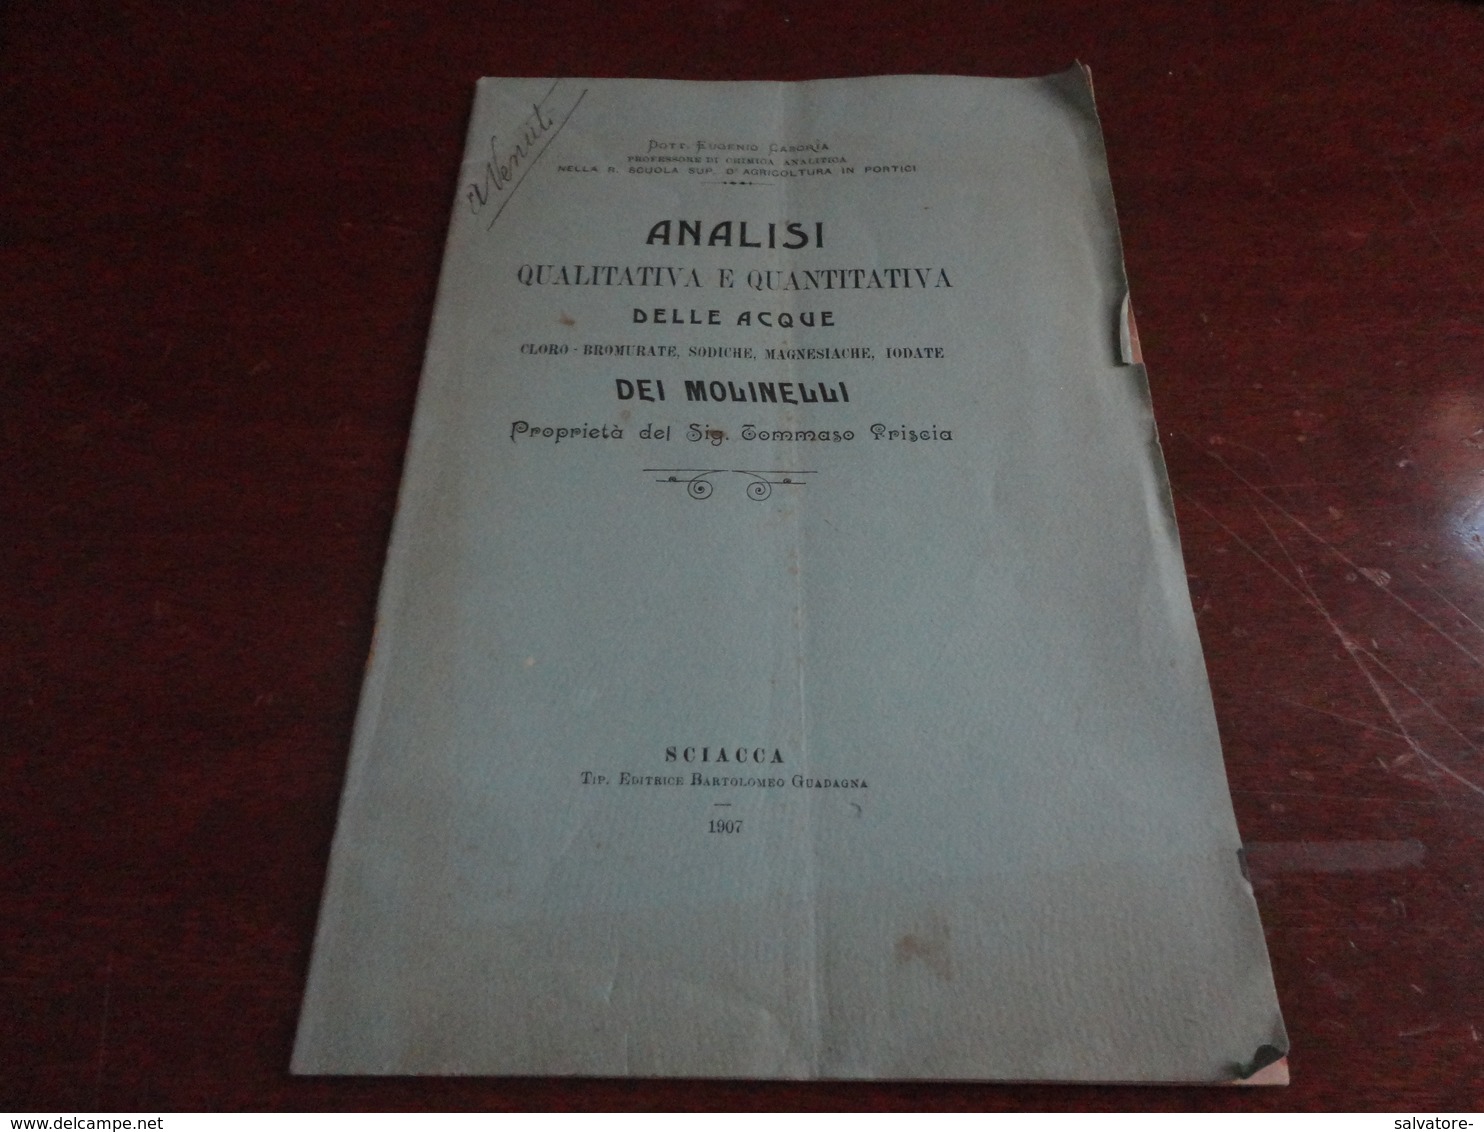 ANALISI QUALITATIVA E QUANTITATIVA DELLE ACQUE DEI MOLINELLI-DOTTOR EUGENIO CASORIA - SCIACCA (AG) 1907 - Medicina, Biologia, Chimica